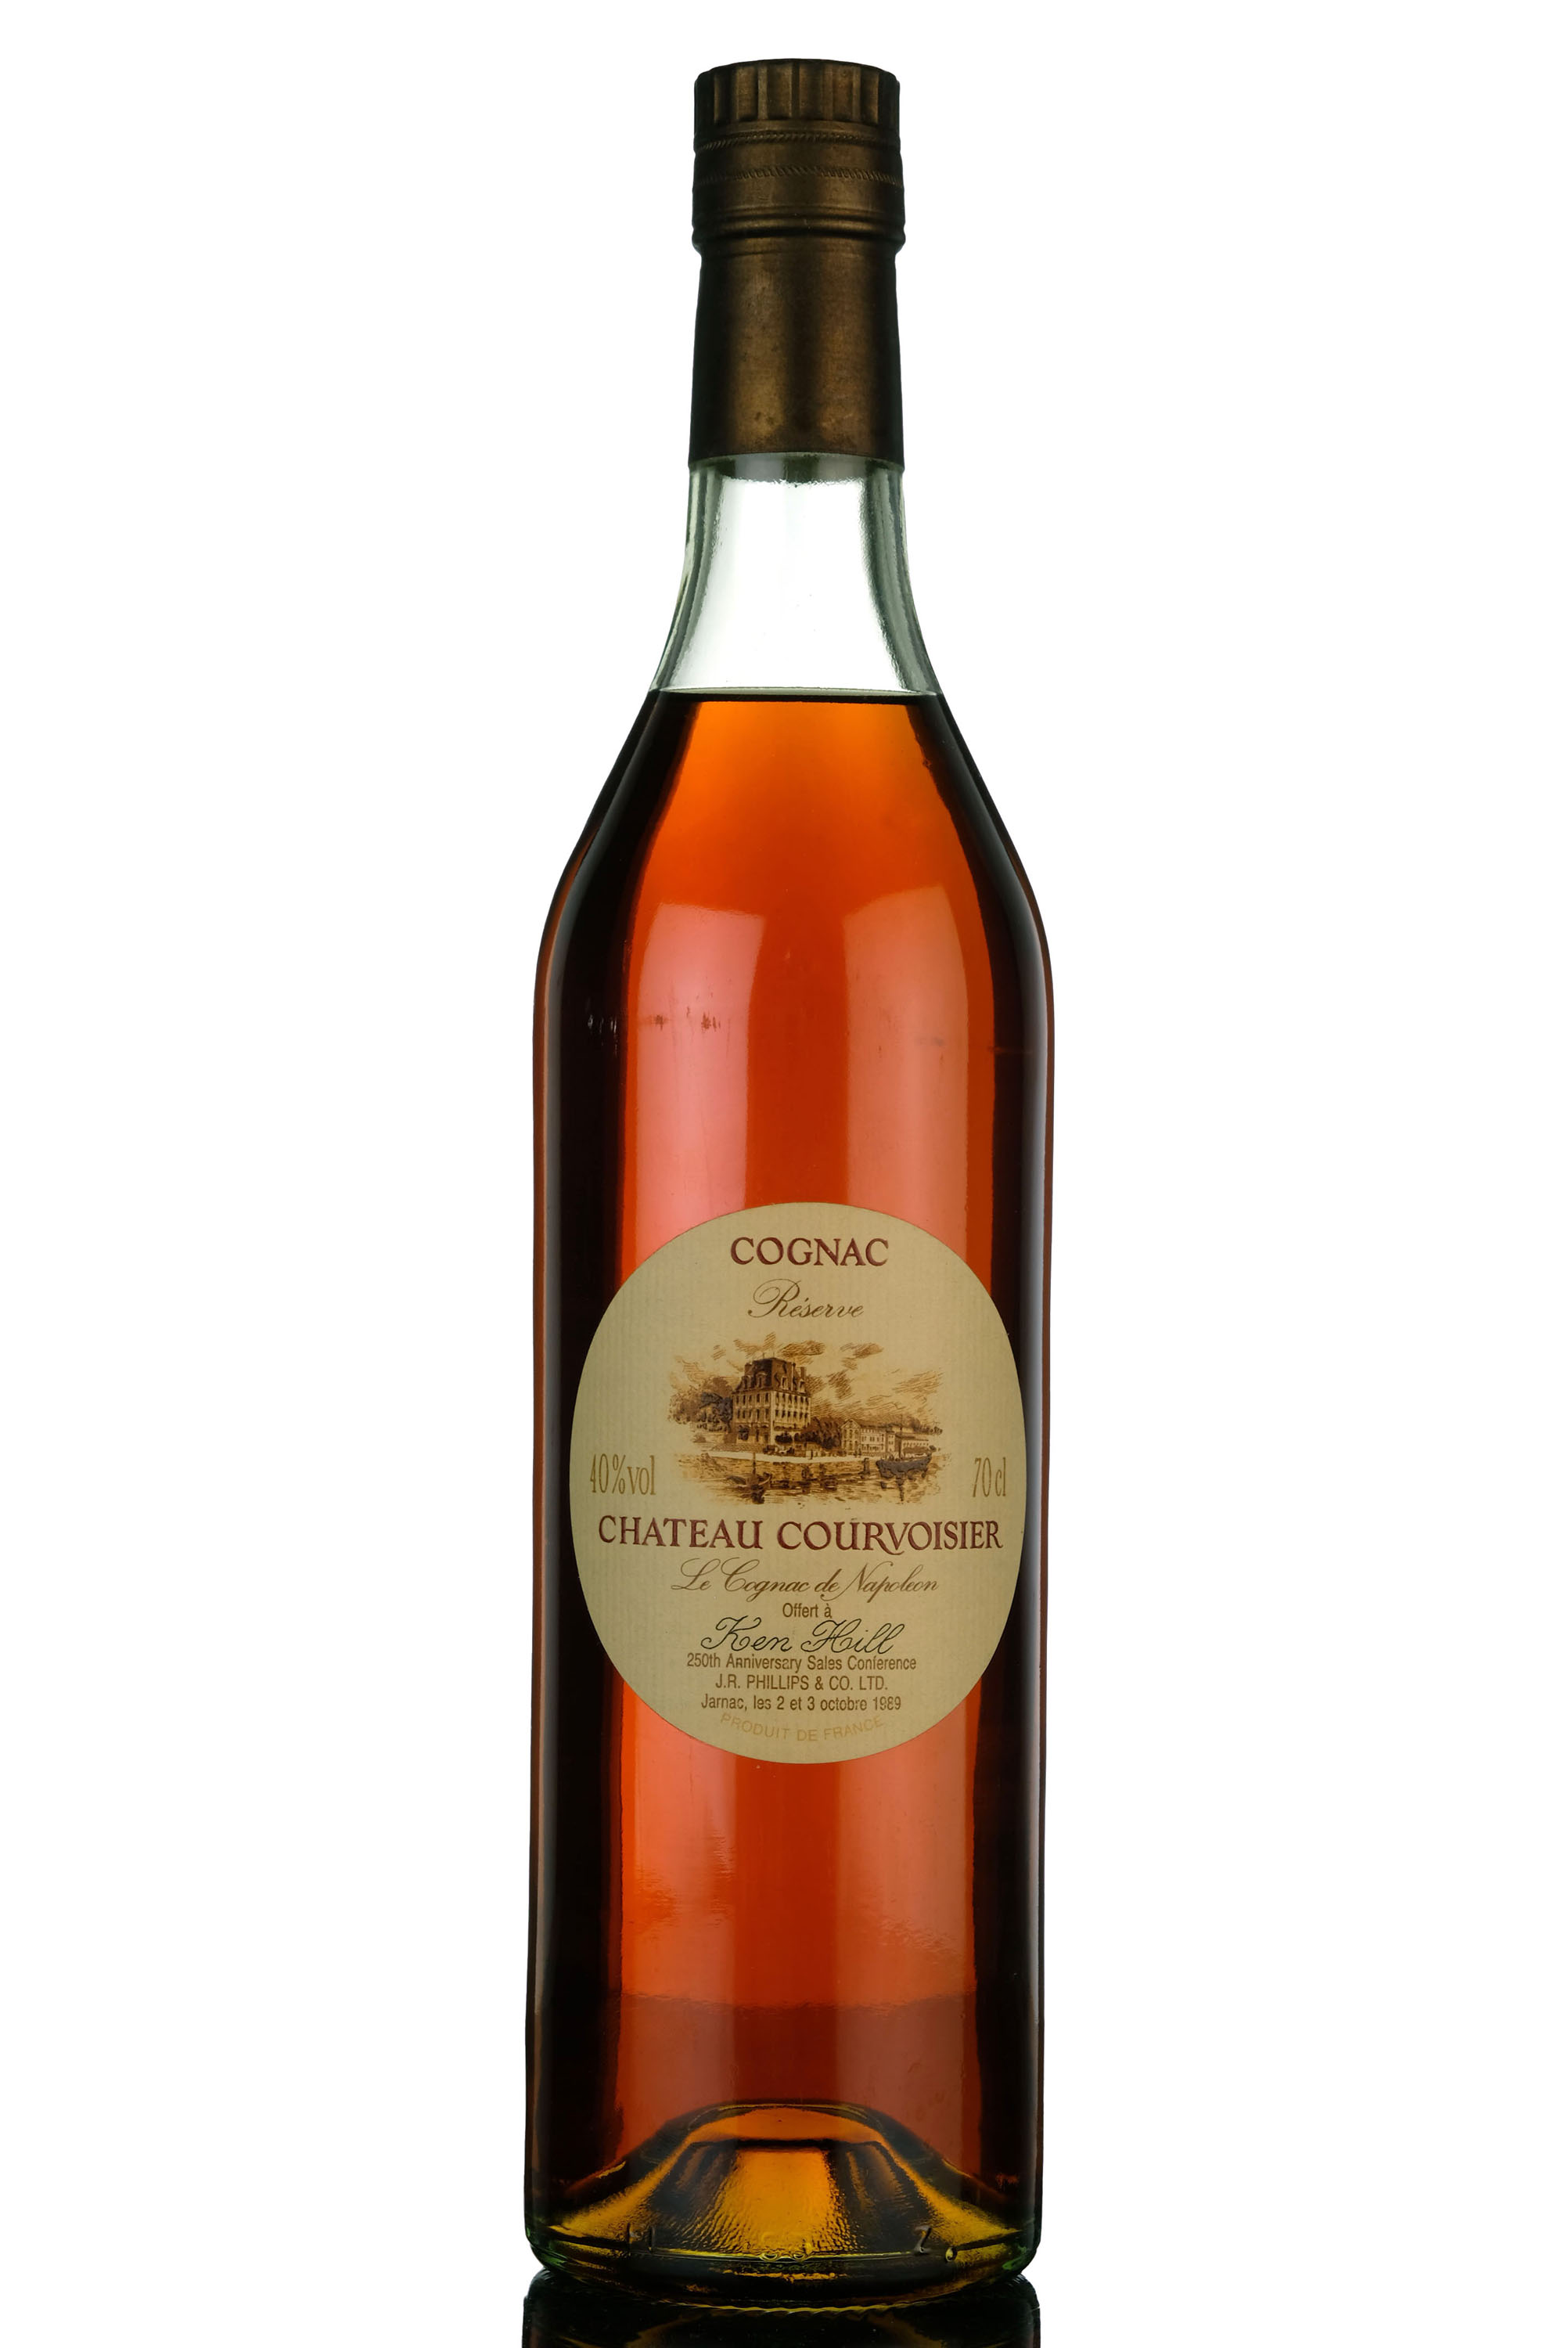 Chateau Courvoisier Cognac Reserve - J.R Phillips & Co. Ltd 250th Anniversary Sales Confer